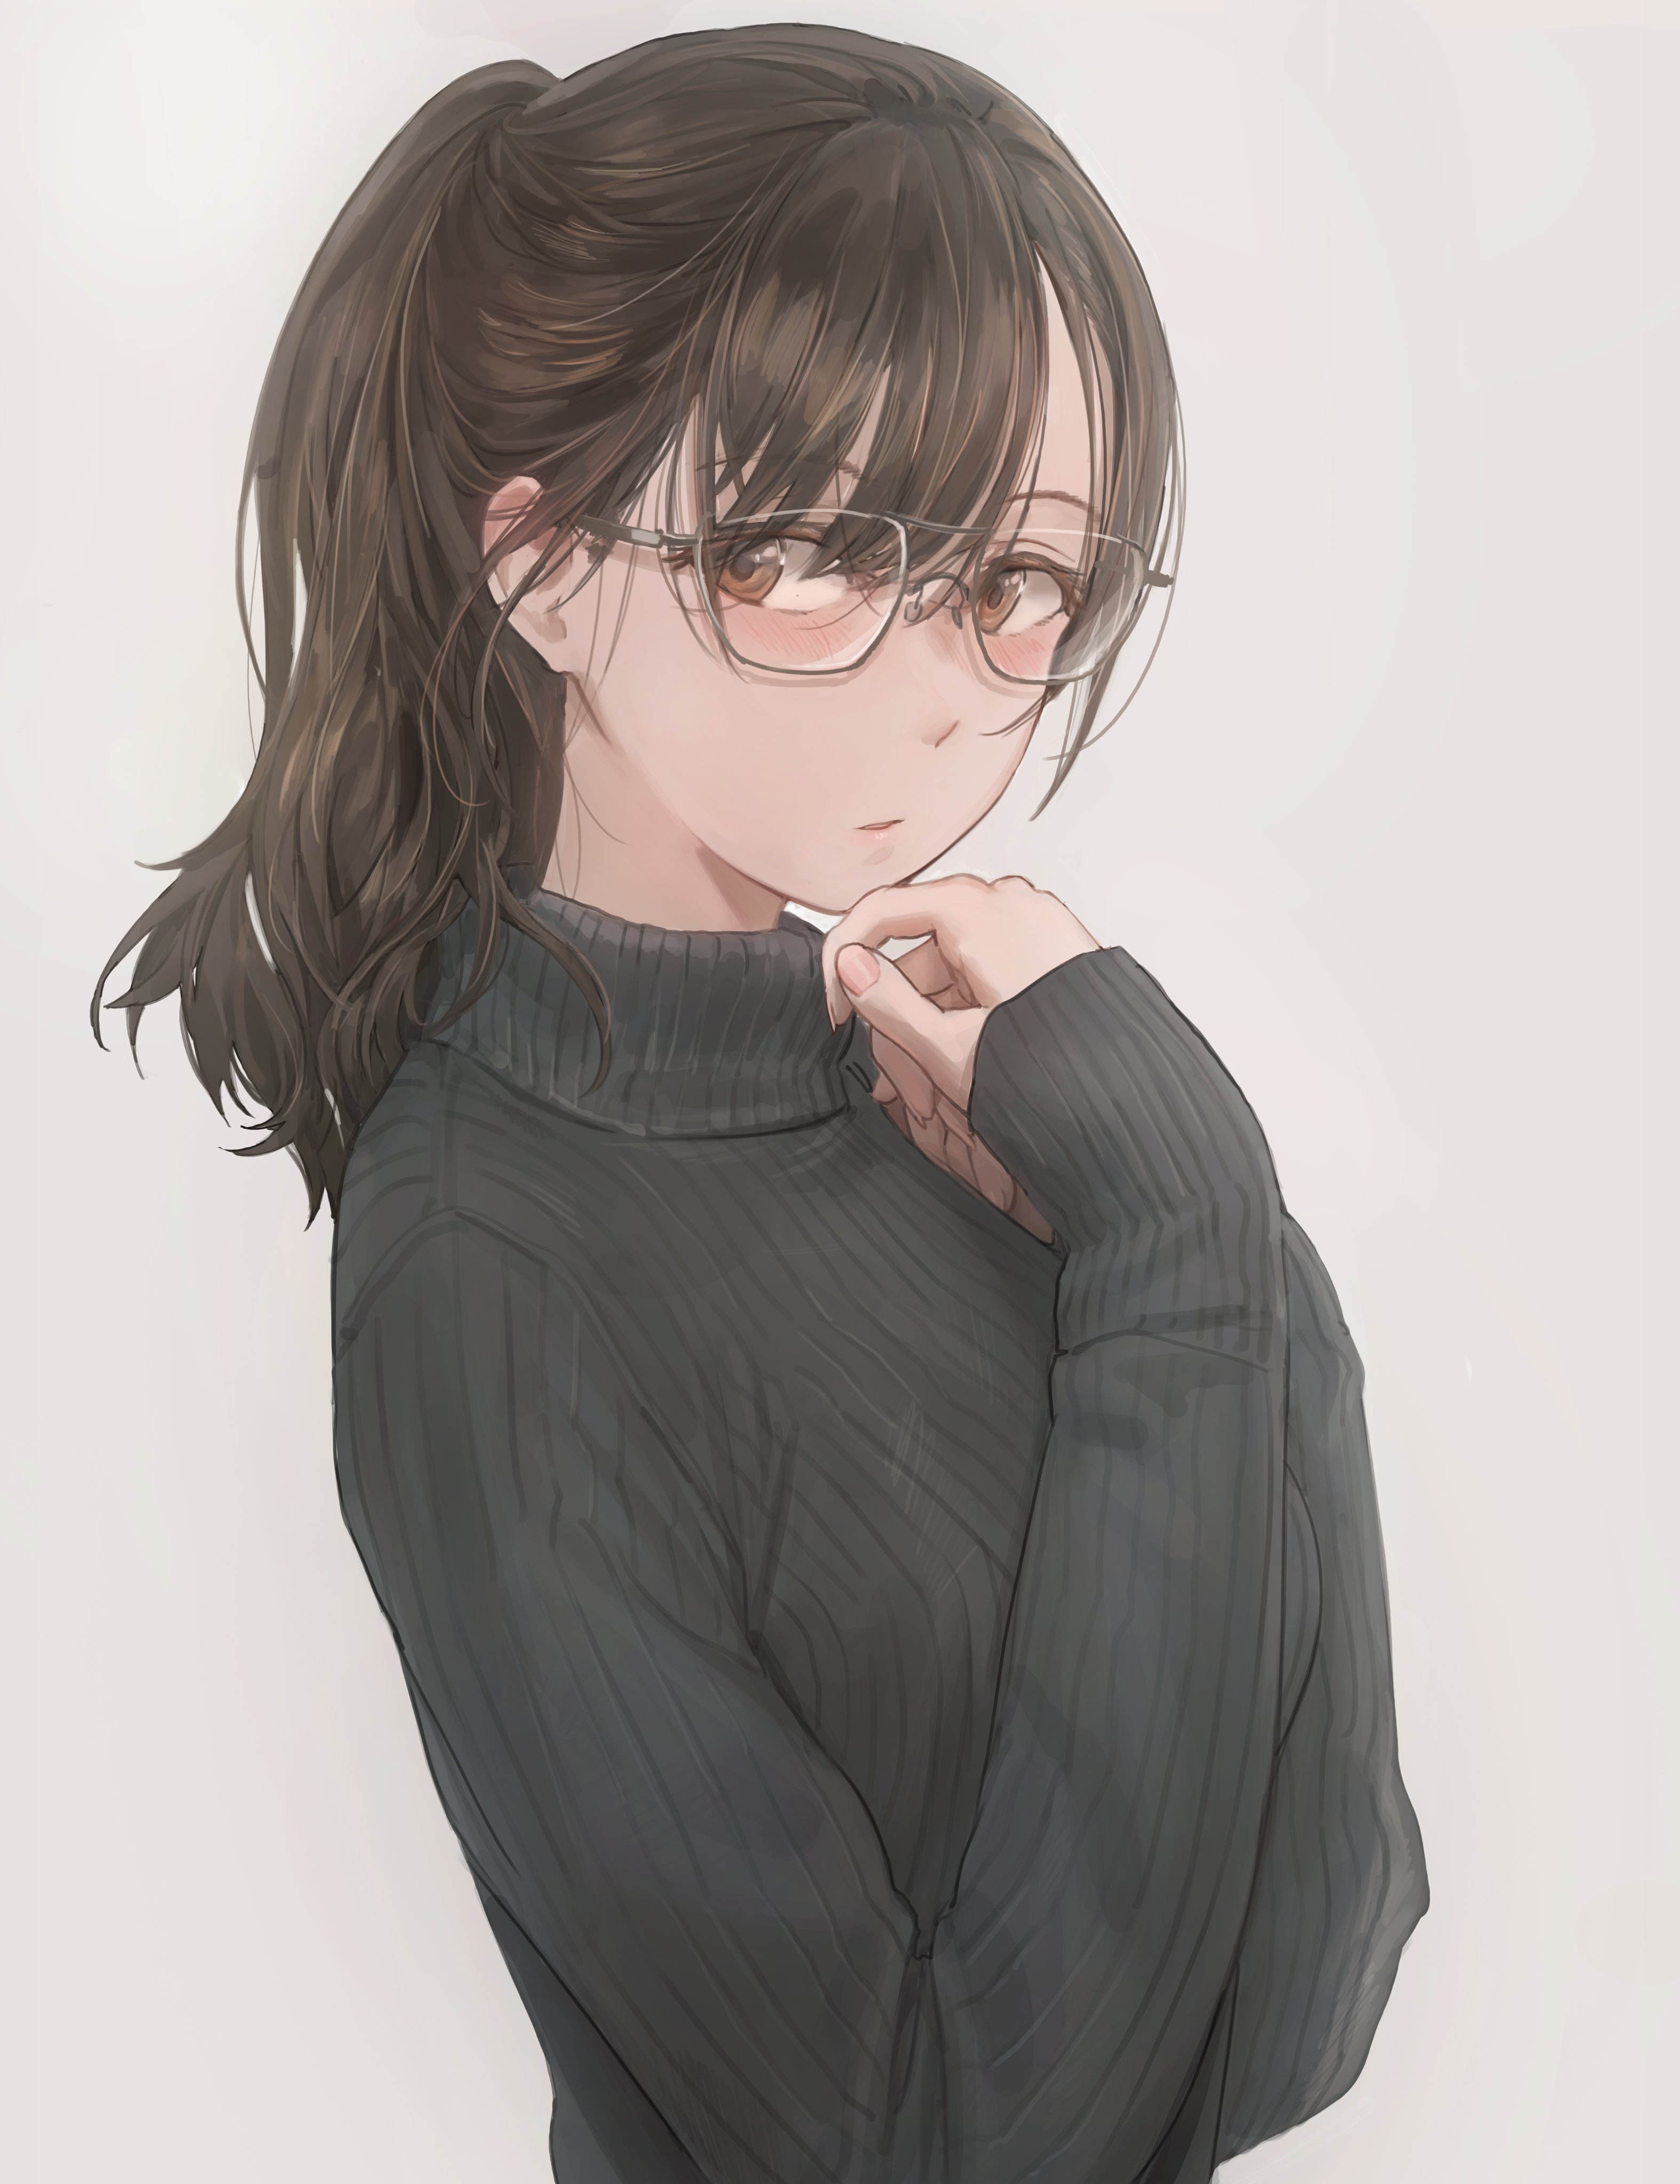 Anime 3151x4096 anime anime girls digital art artwork 2D portrait display Yohan1754 sweater glasses brown eyes brunette ponytail